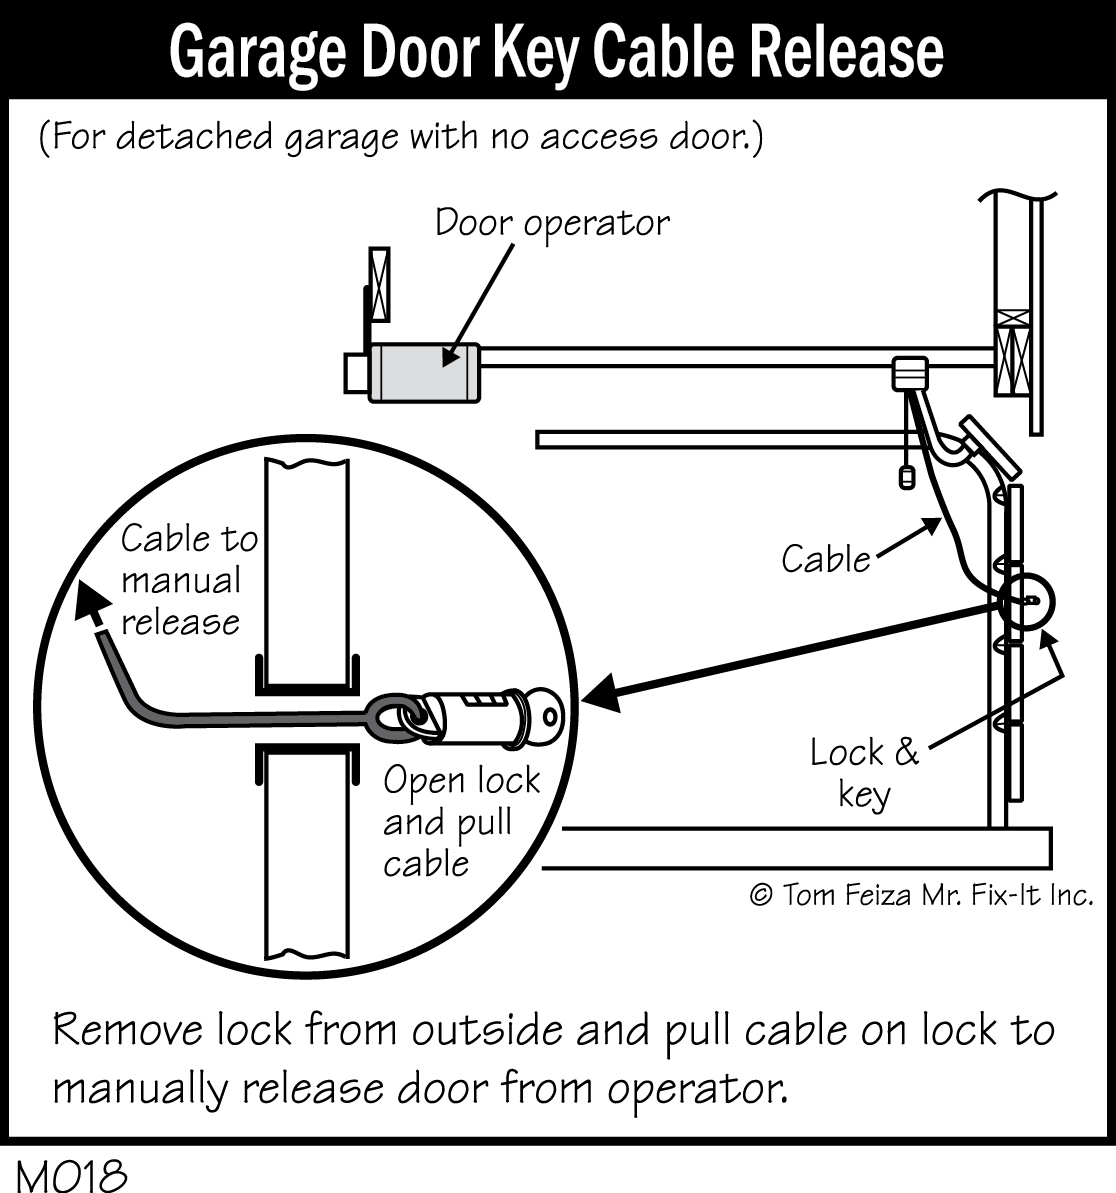 M018 - Garage Door Key Cable Release